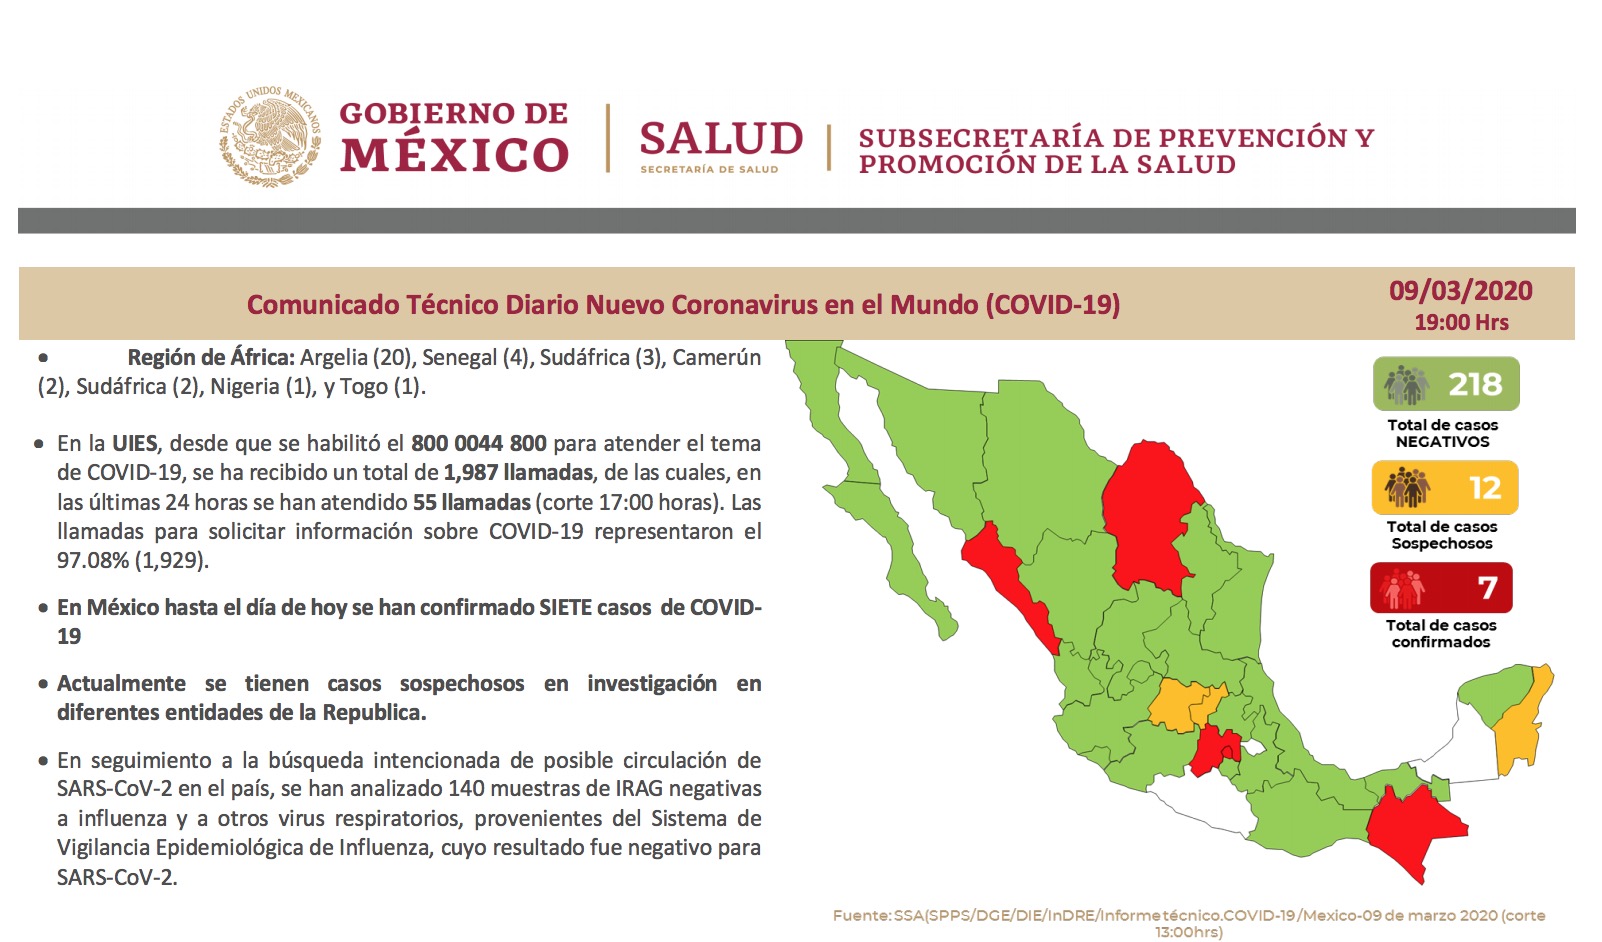 墨西哥新冠肺炎确诊病例维持在7例 疑似病例12例